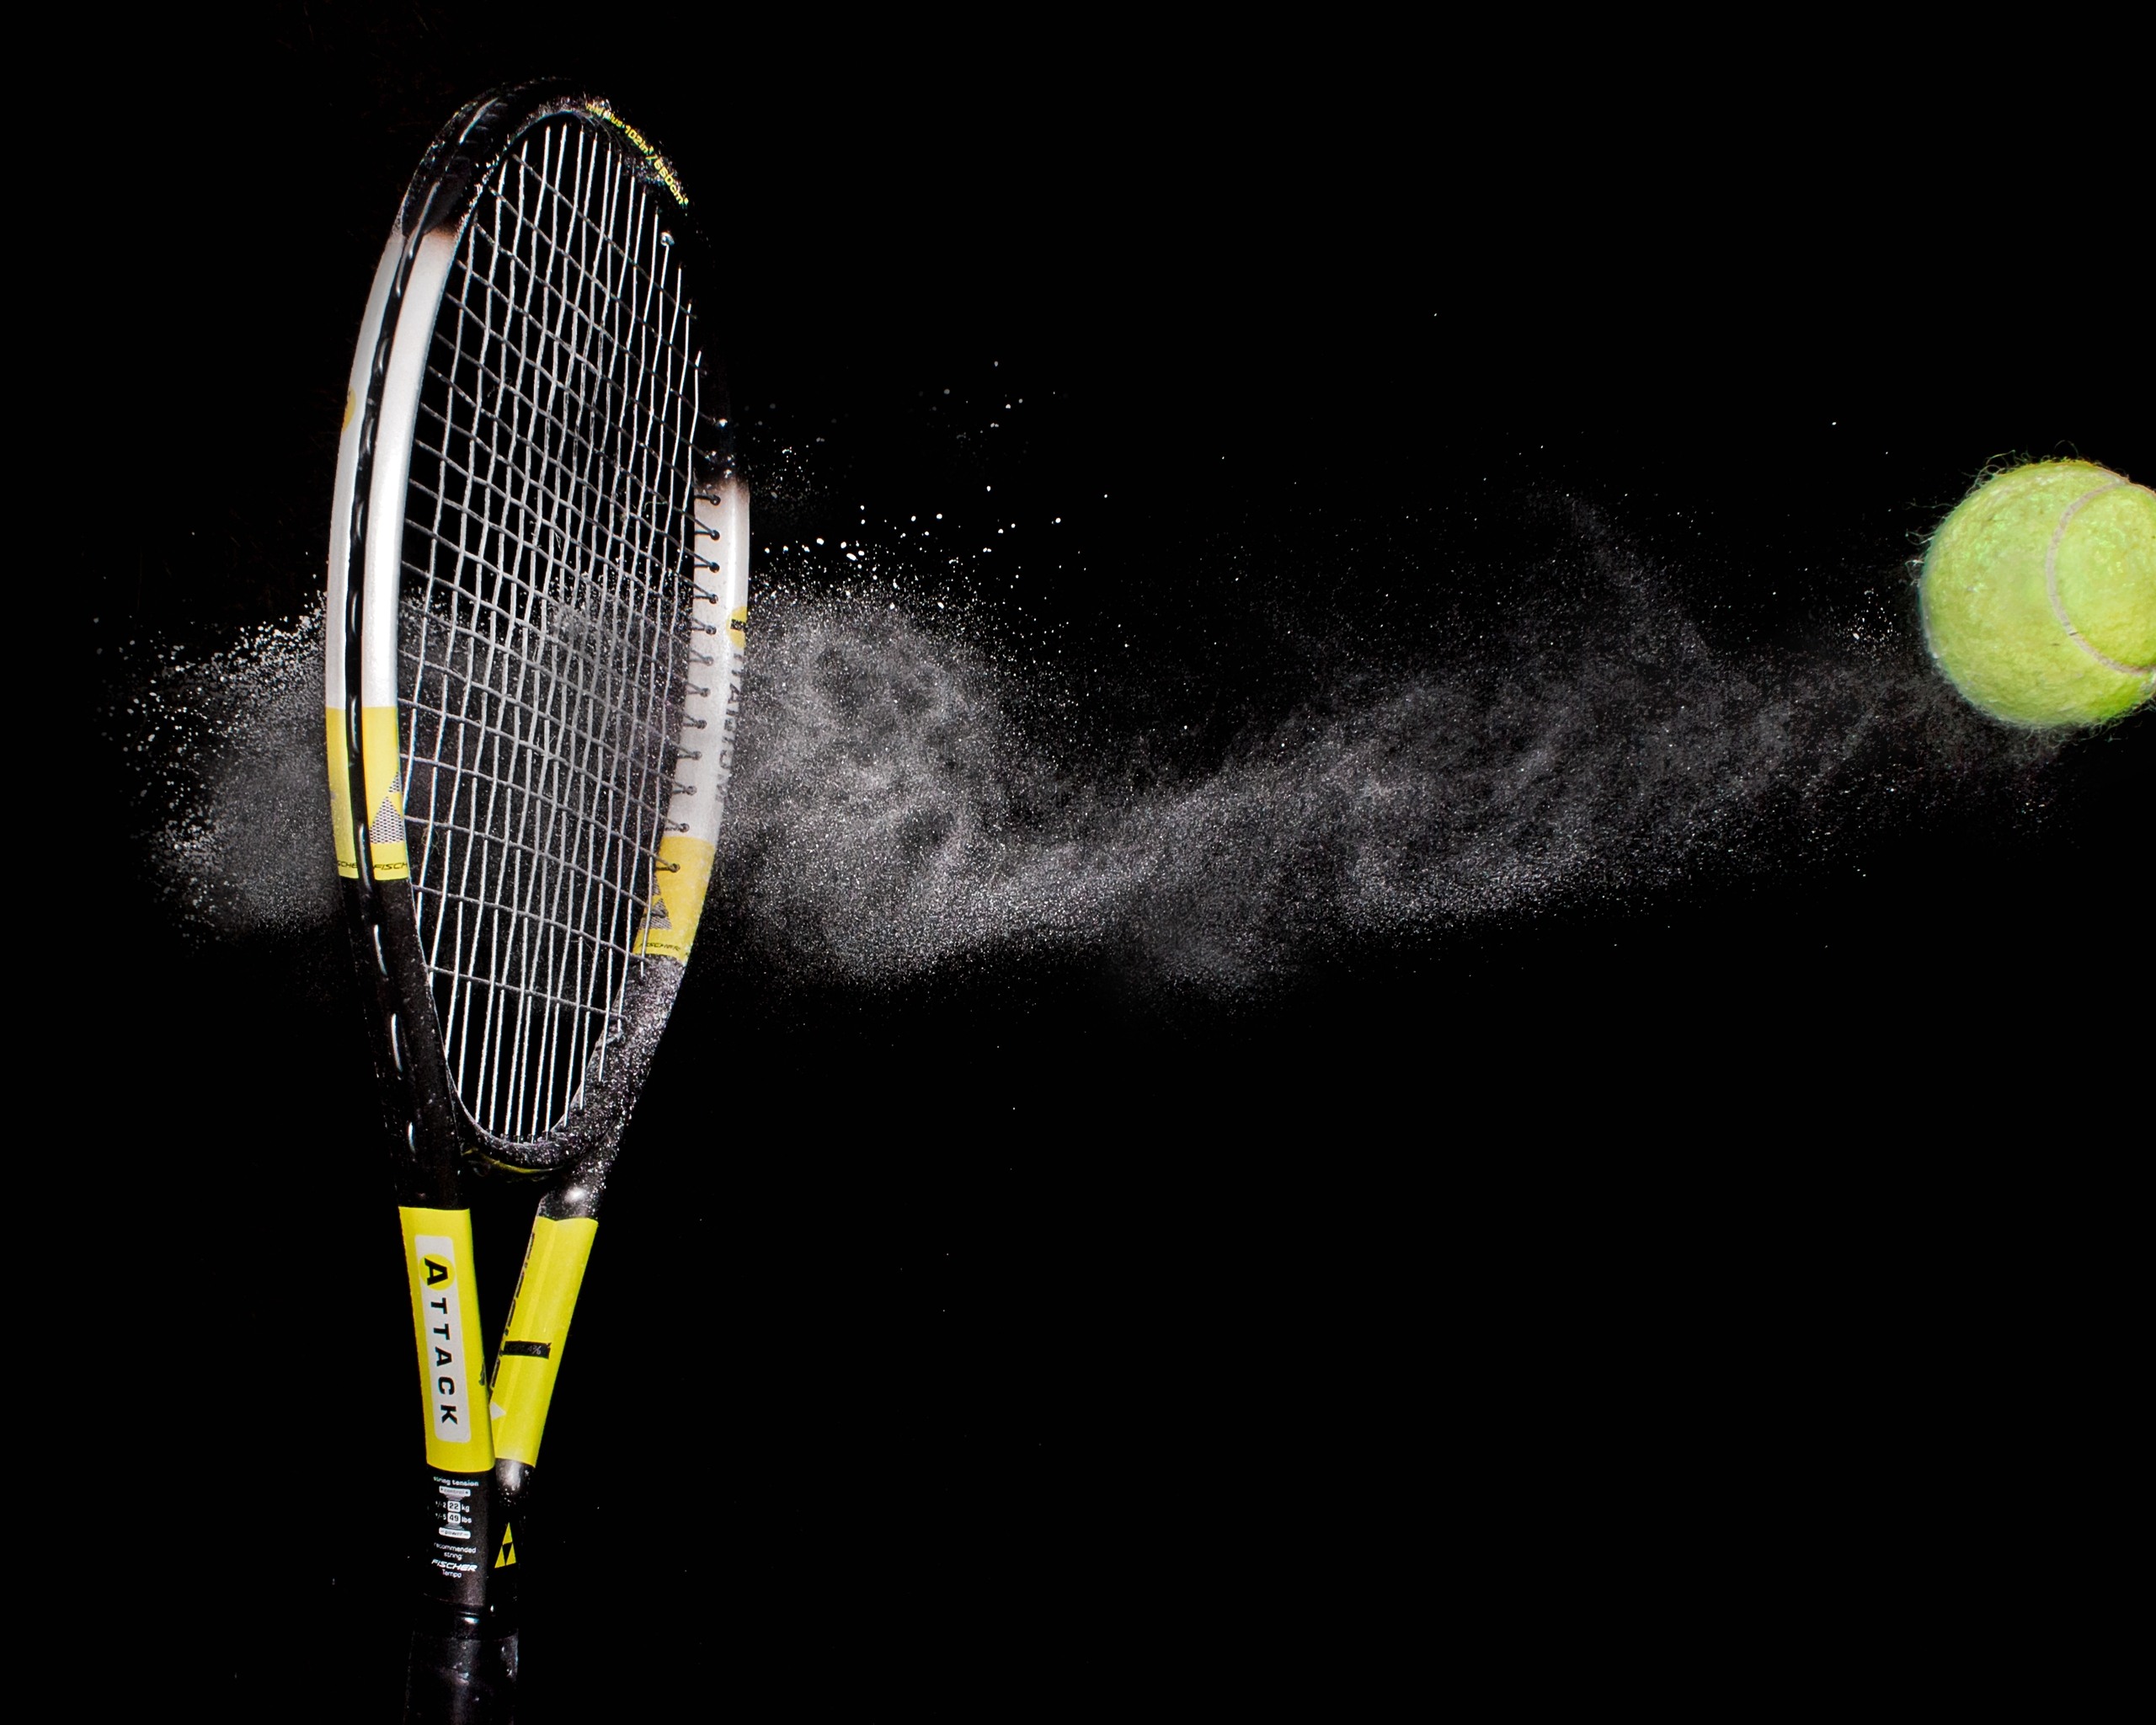 Картинка: Ракетка, теннис, мяч, удар, чёрный фон